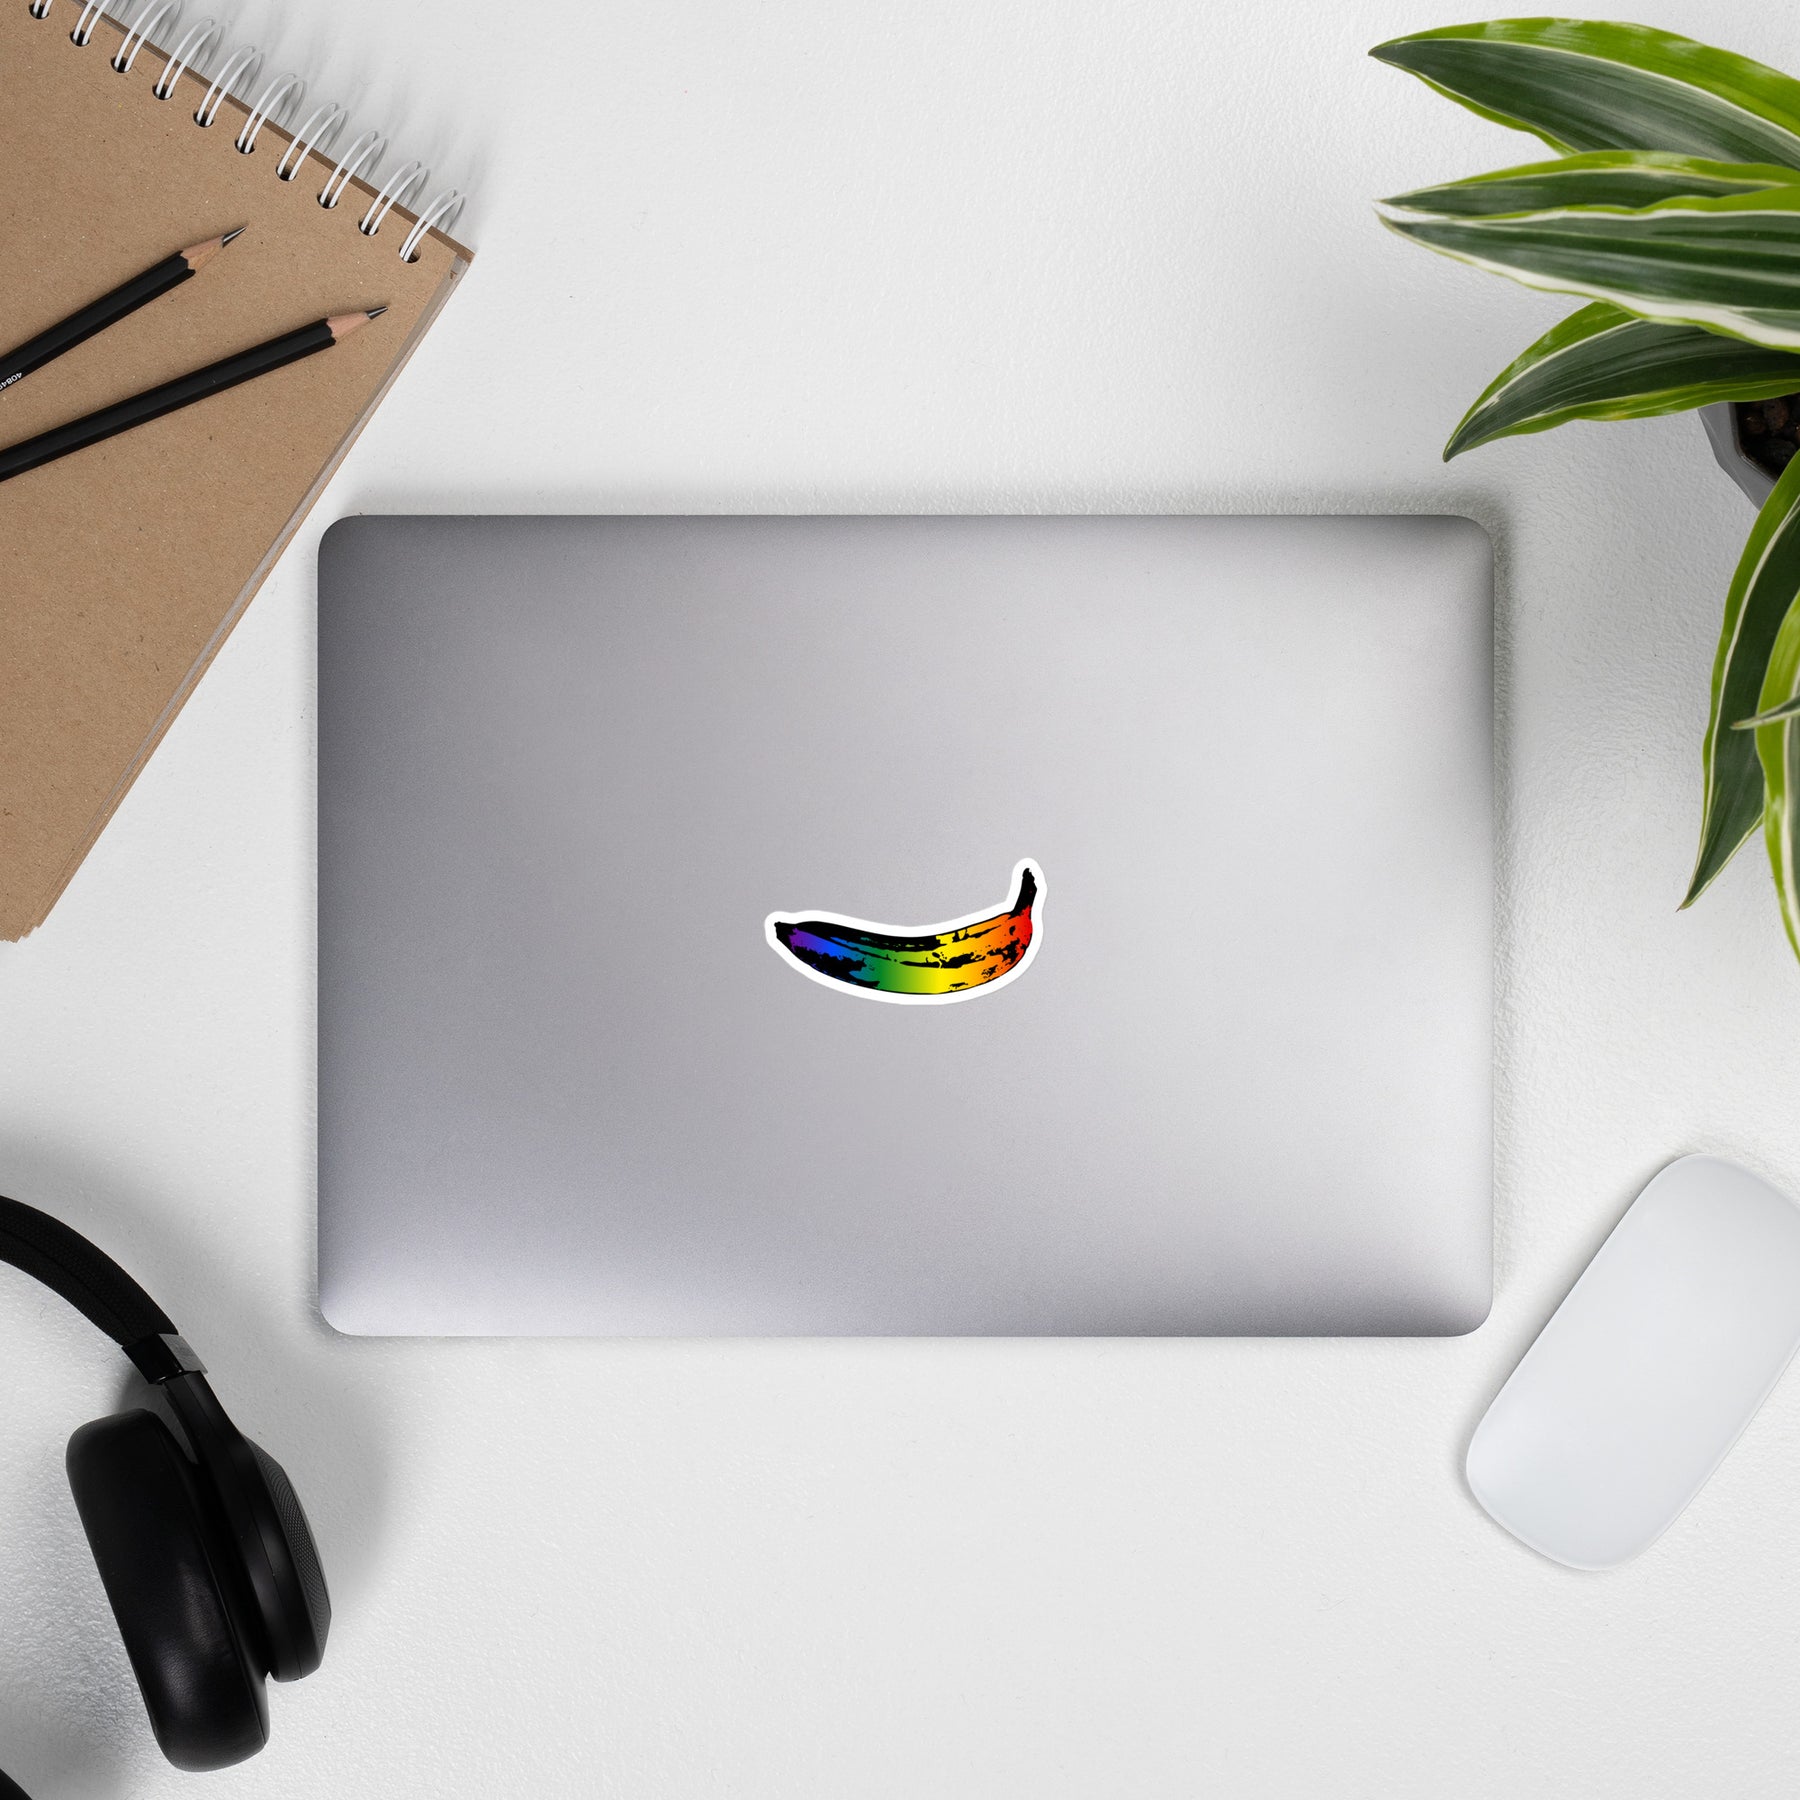 50 PC Rainbow Pride Stickers